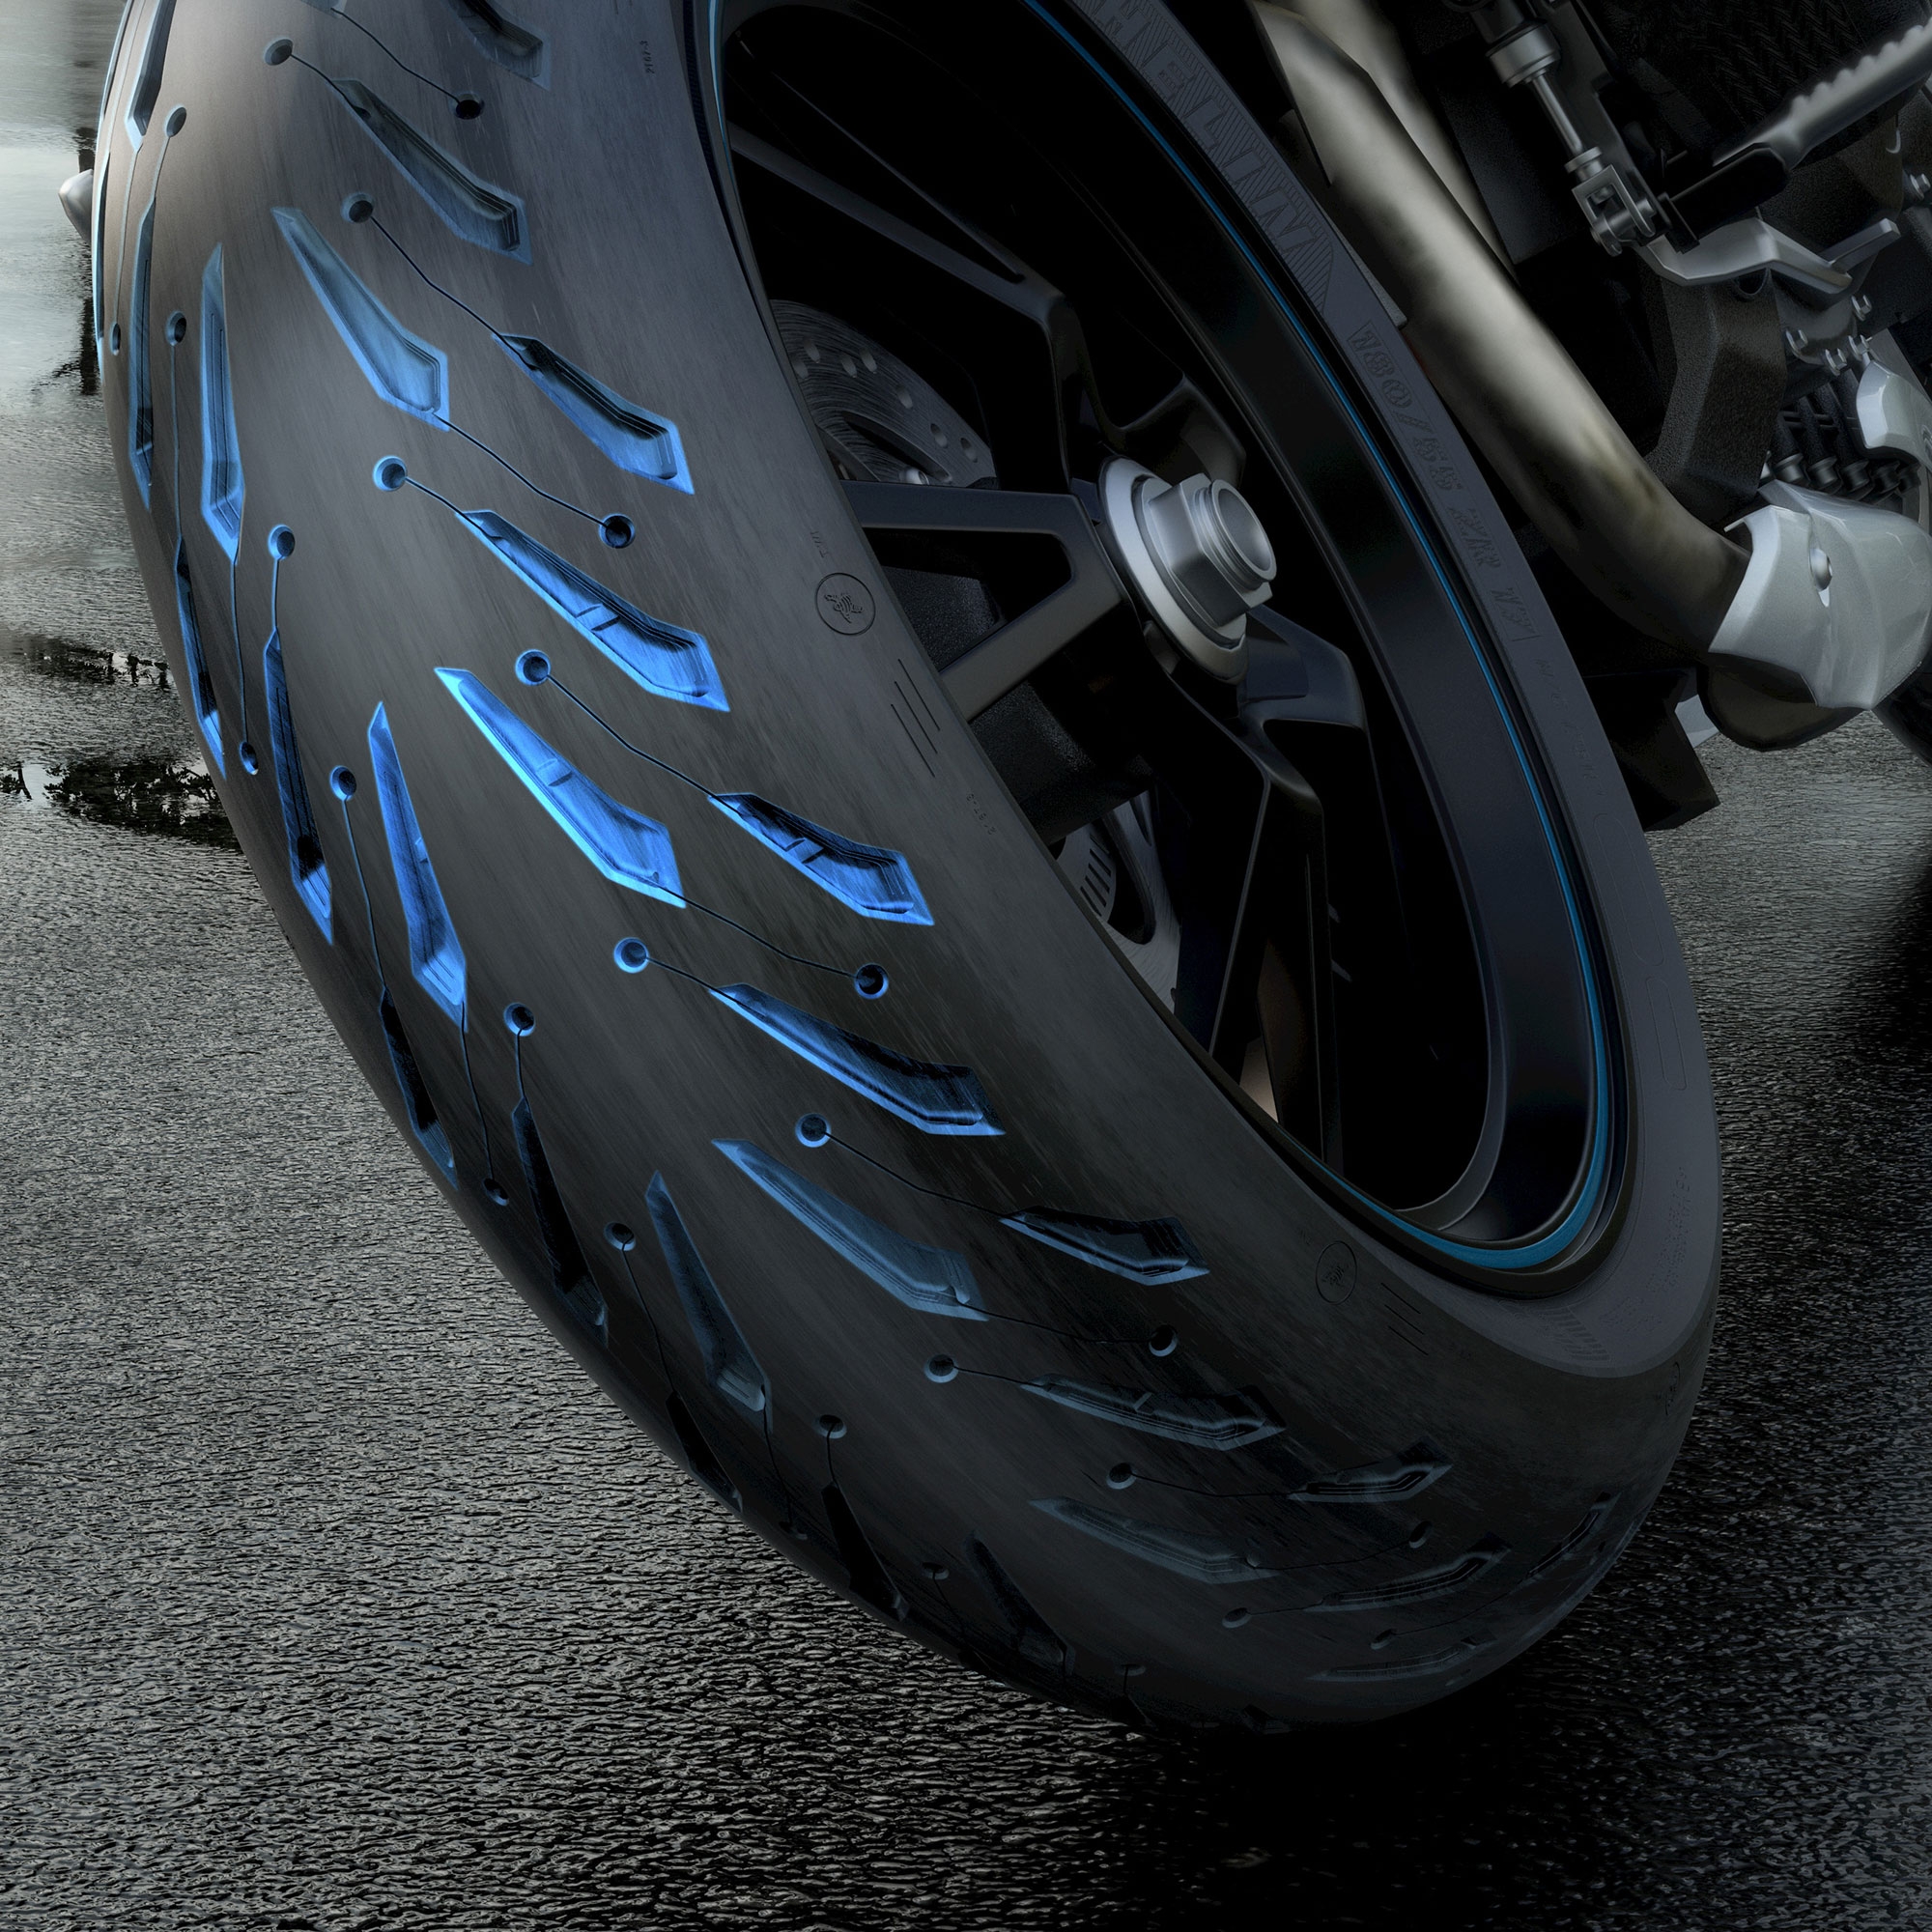 Motorcycle Tyres 190/50 ZR17 Michelin 73W Rear PILOT ROAD 5